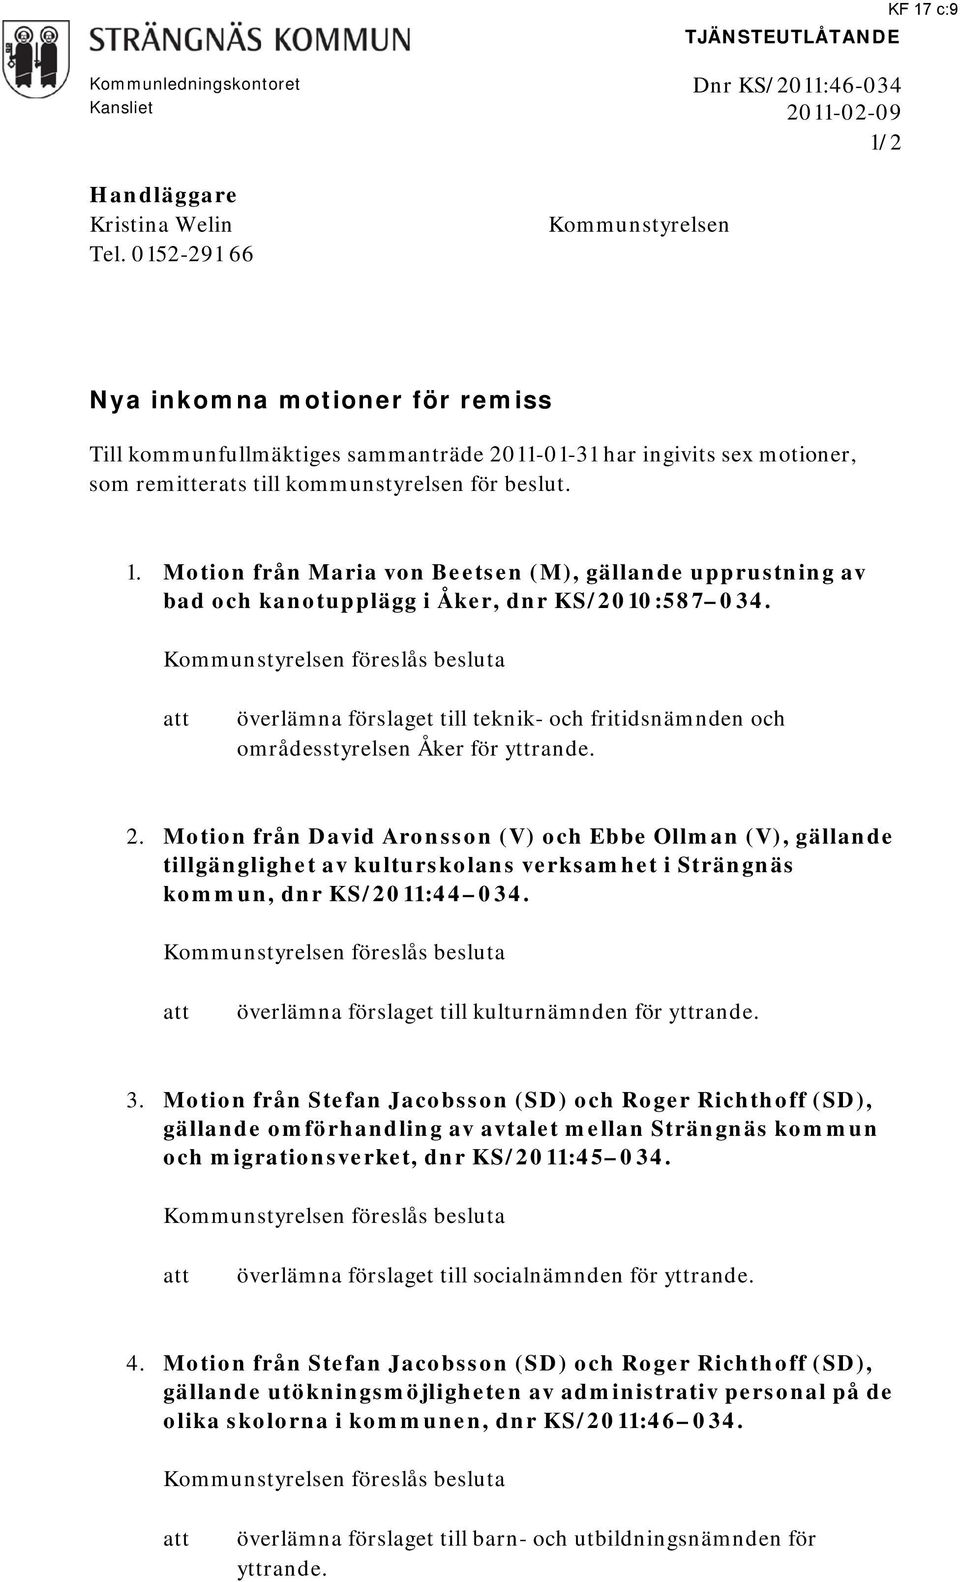 Motion från Maria von Beetsen (M), gällande upprustning av bad och kanotupplägg i Åker, dnr KS/2010:587 034.